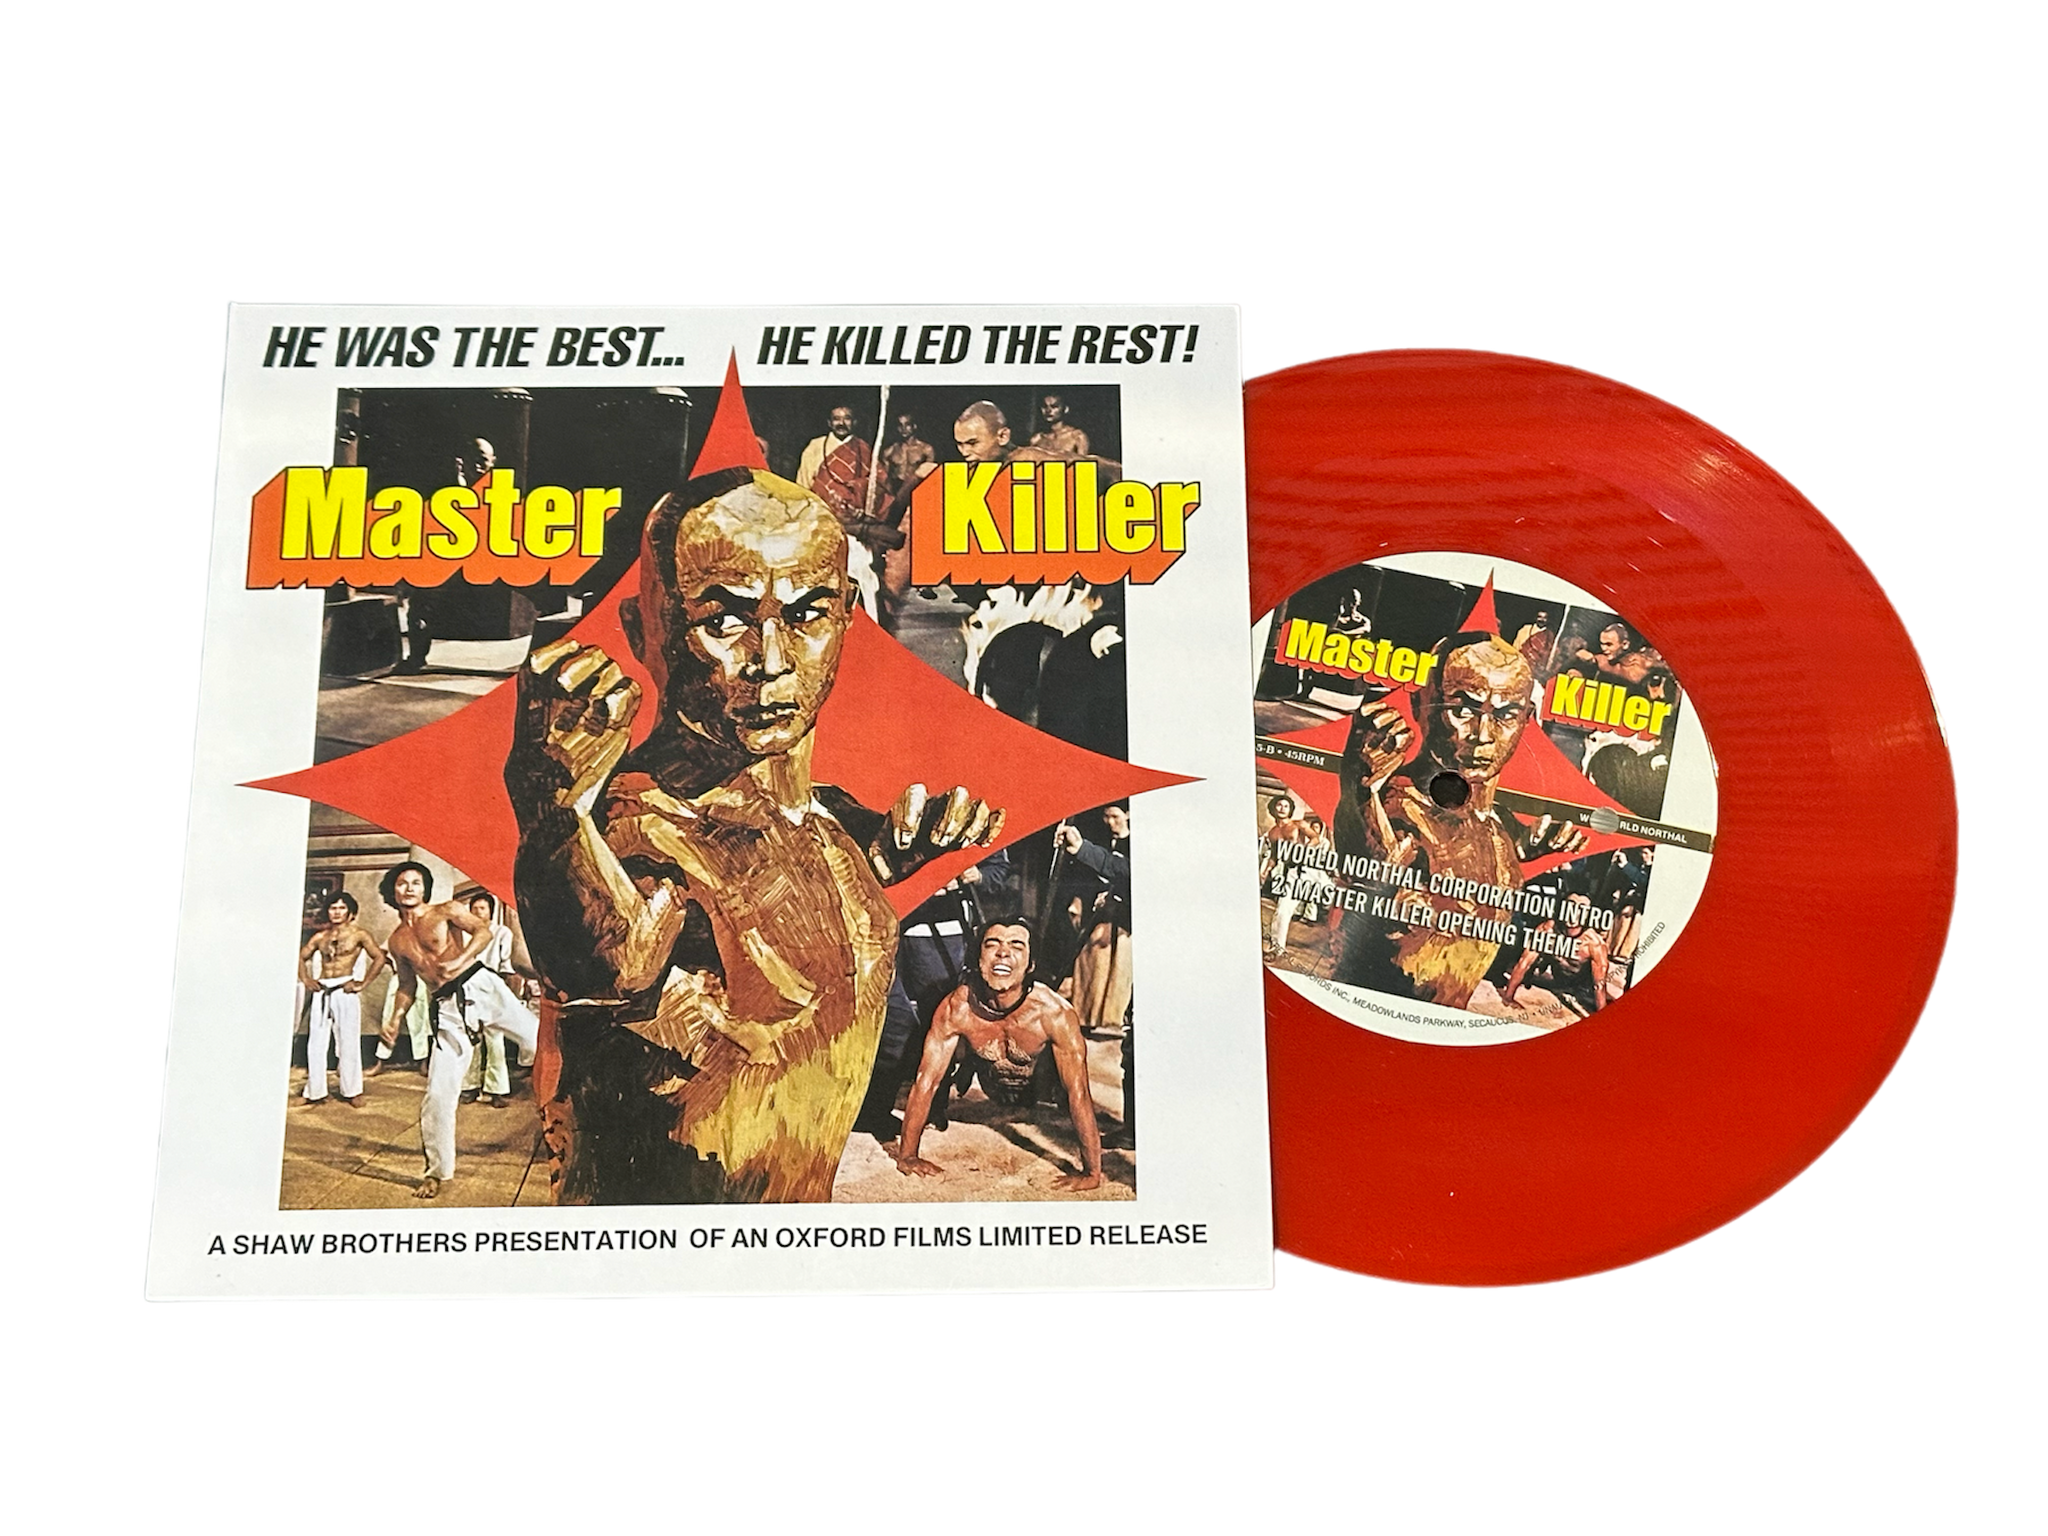 REGAL RECORDS - MASTER KILLER 7" VINYL RECORD